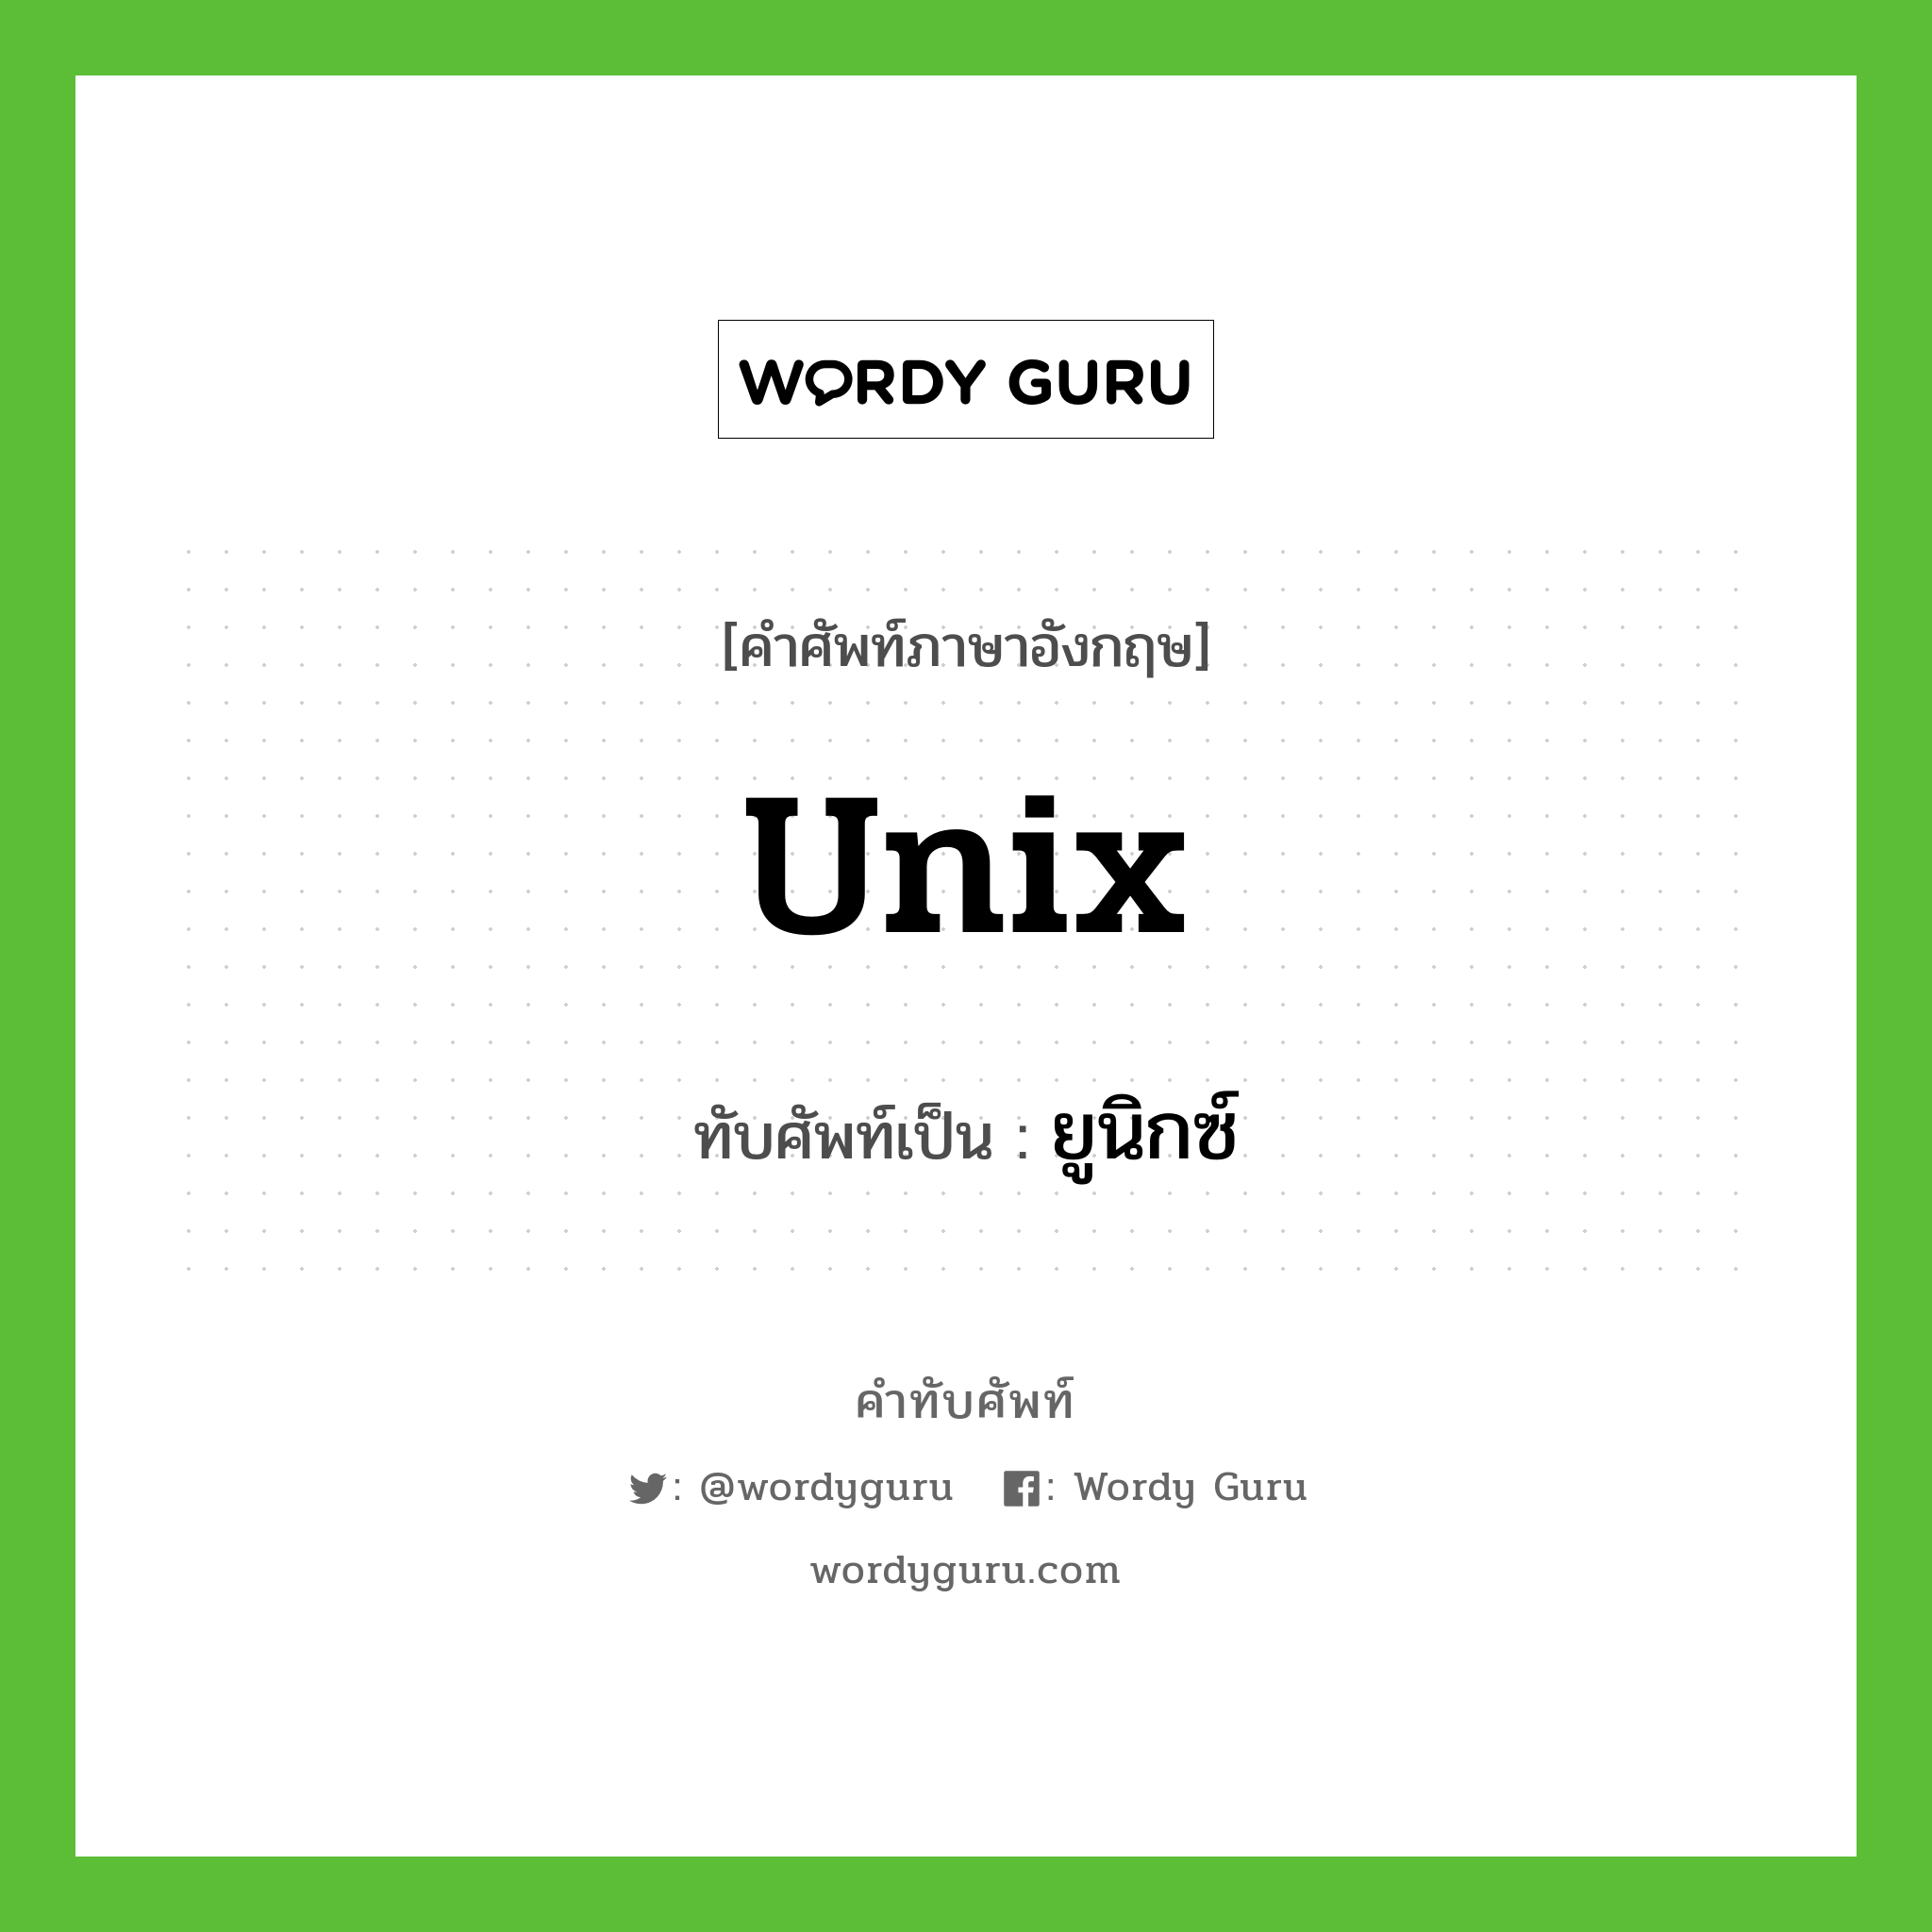 ยูนิกซ์ เขียนอย่างไร?, คำศัพท์ภาษาอังกฤษ ยูนิกซ์ ทับศัพท์เป็น Unix